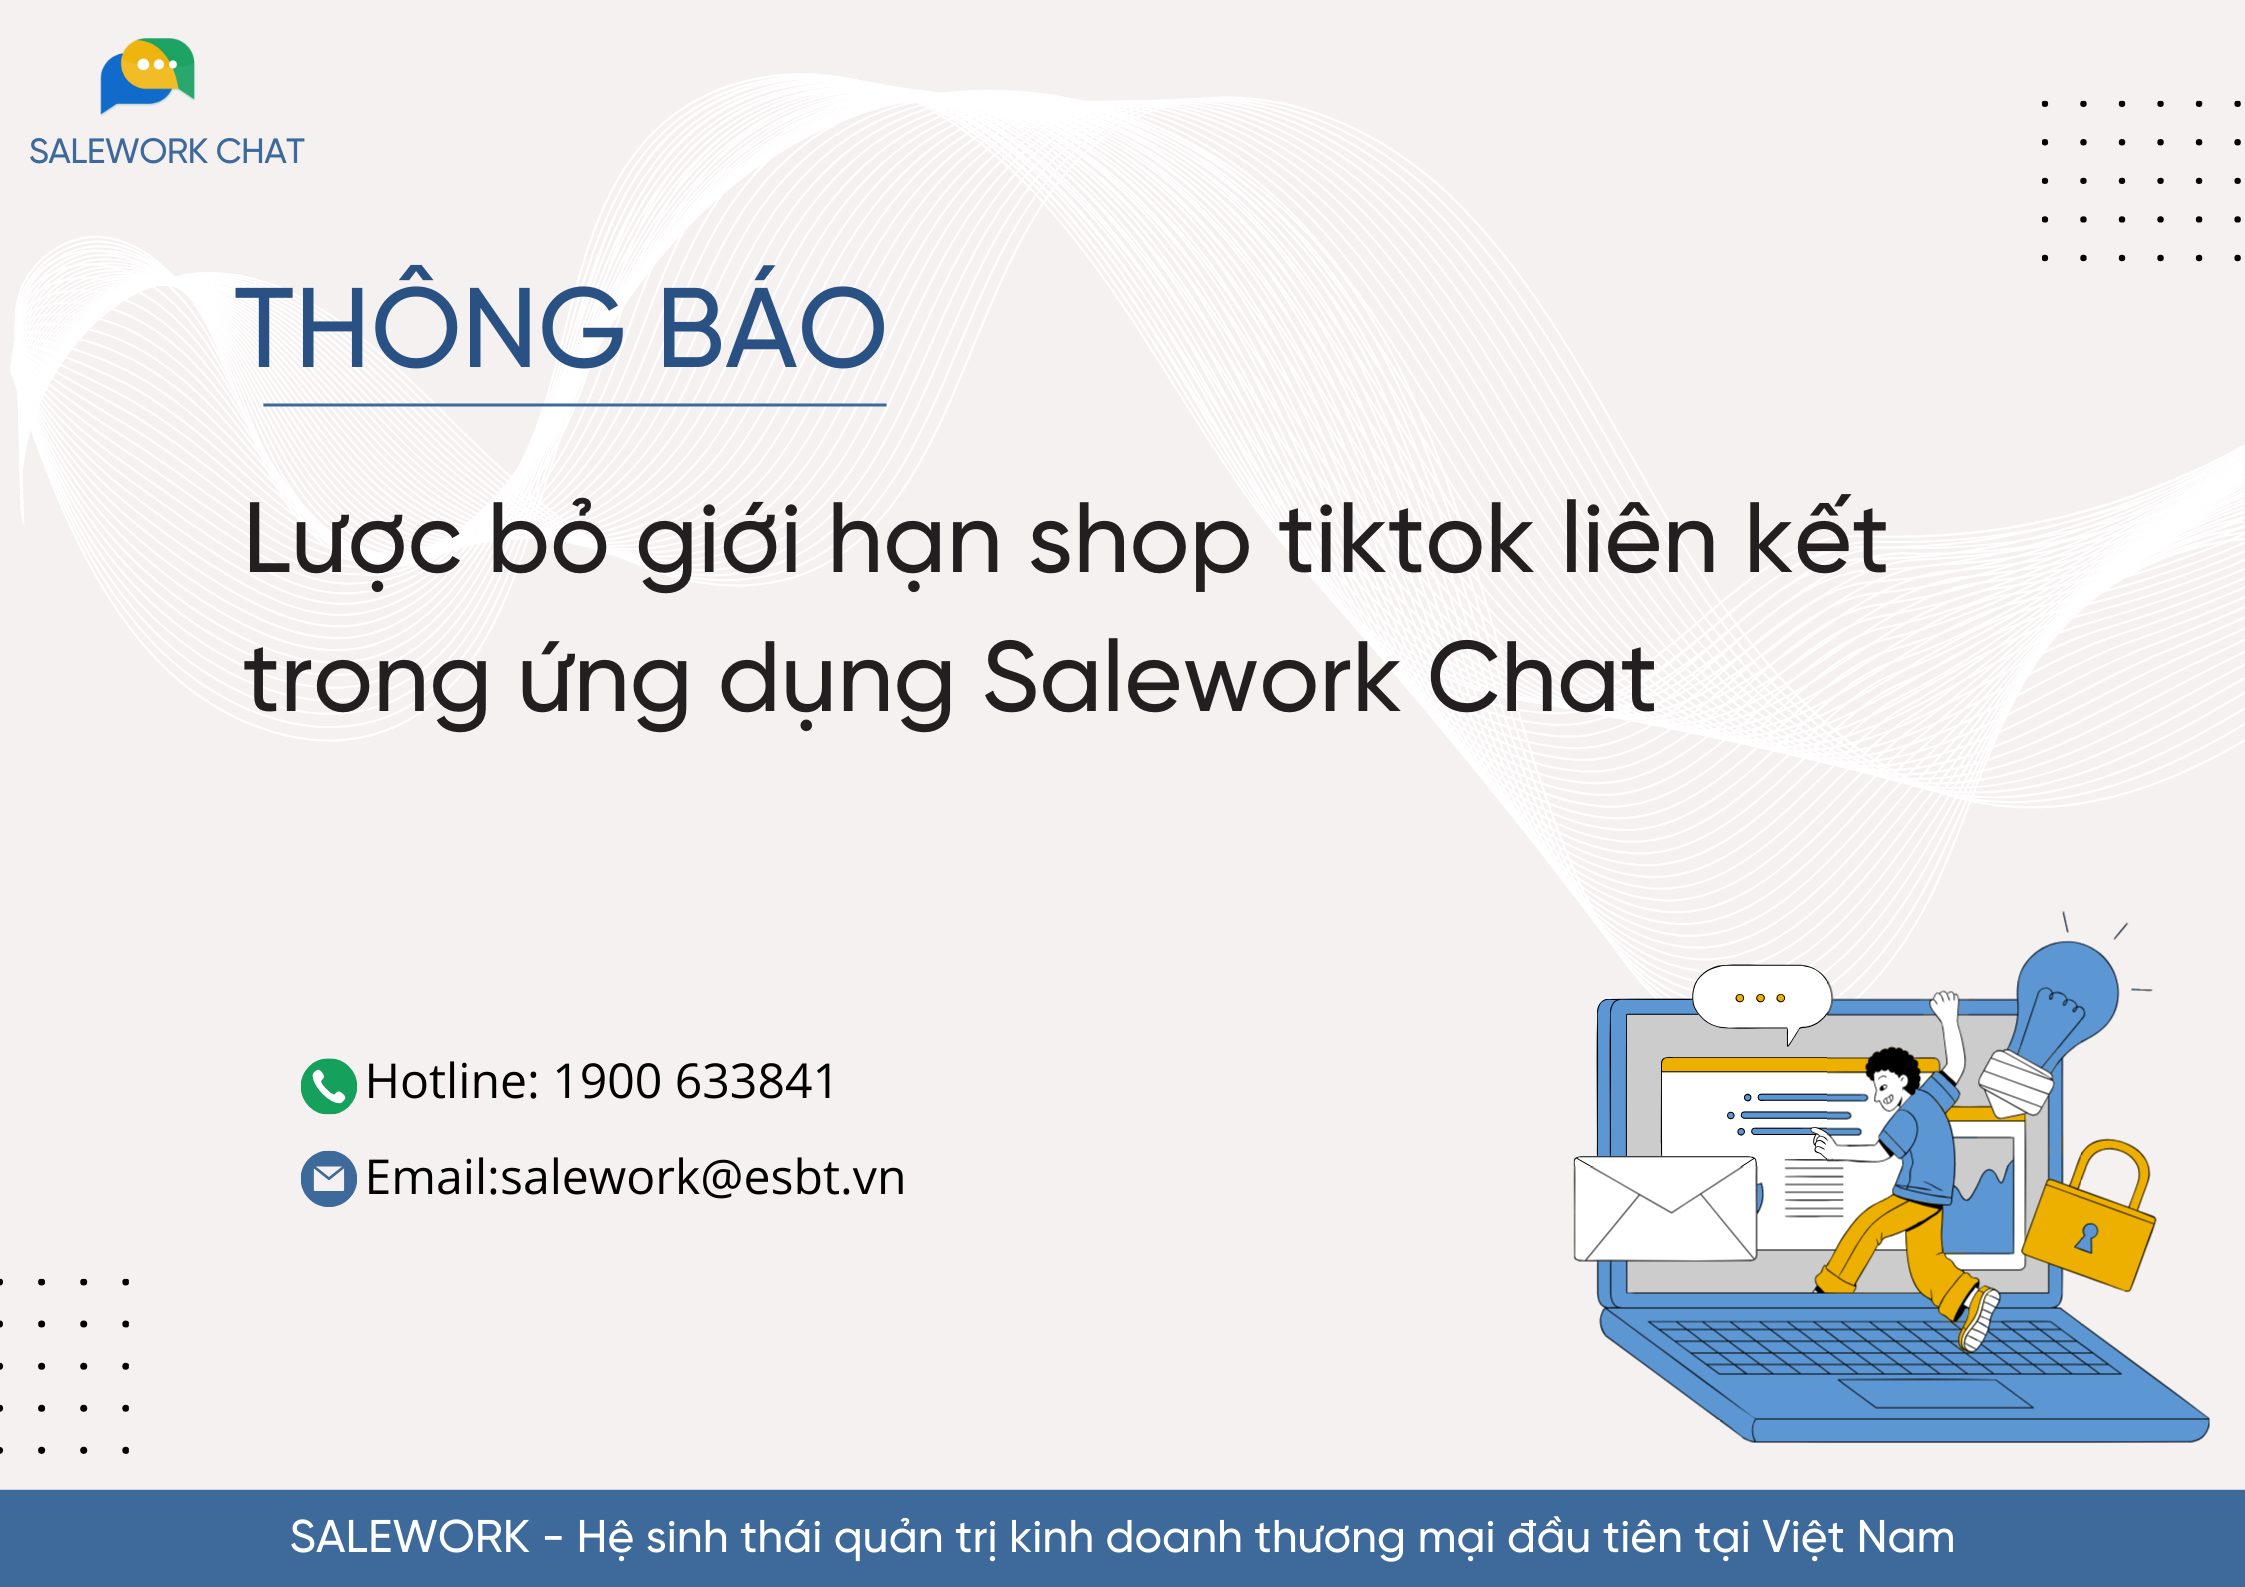 [Thông báo] Lược bỏ giới hạn shop tiktok liên kết trong ứng dụng Salework Chat - 10